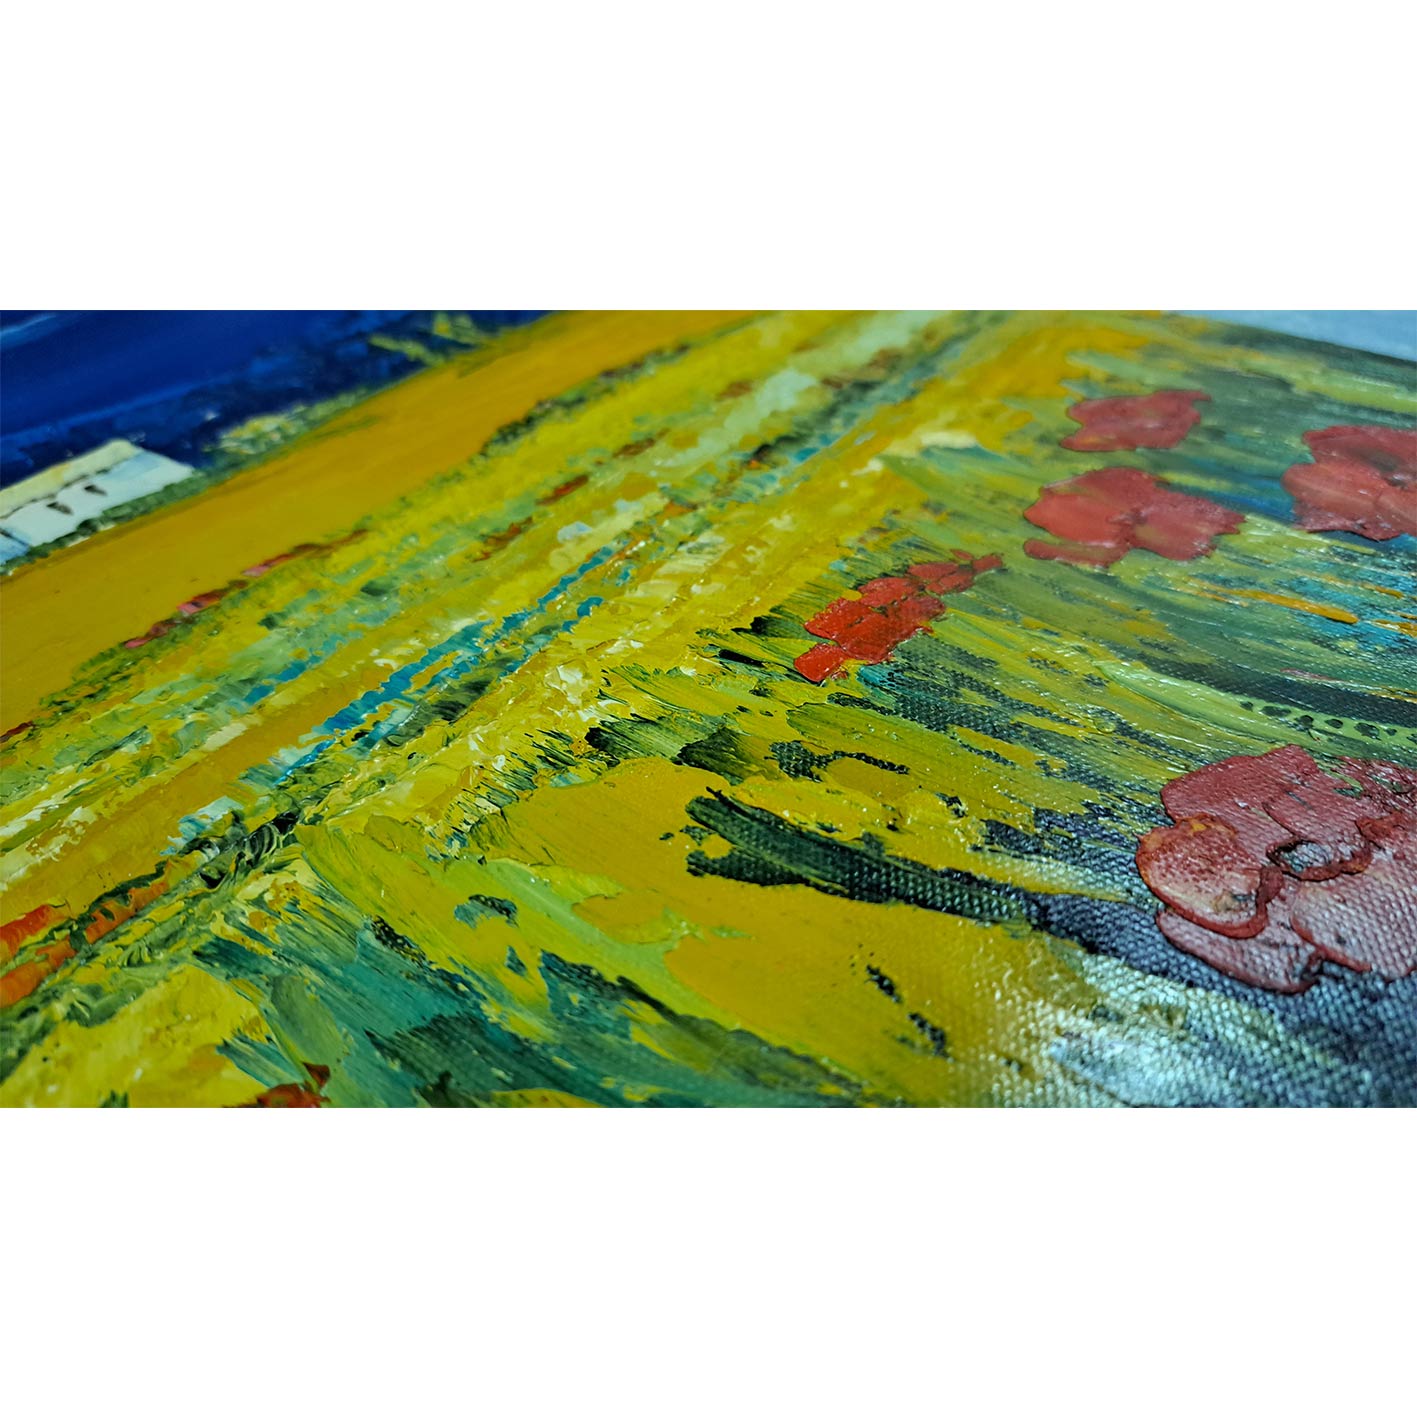 Landschafts-Diptychon-Gemälde 50X60 cm [2 Stück]